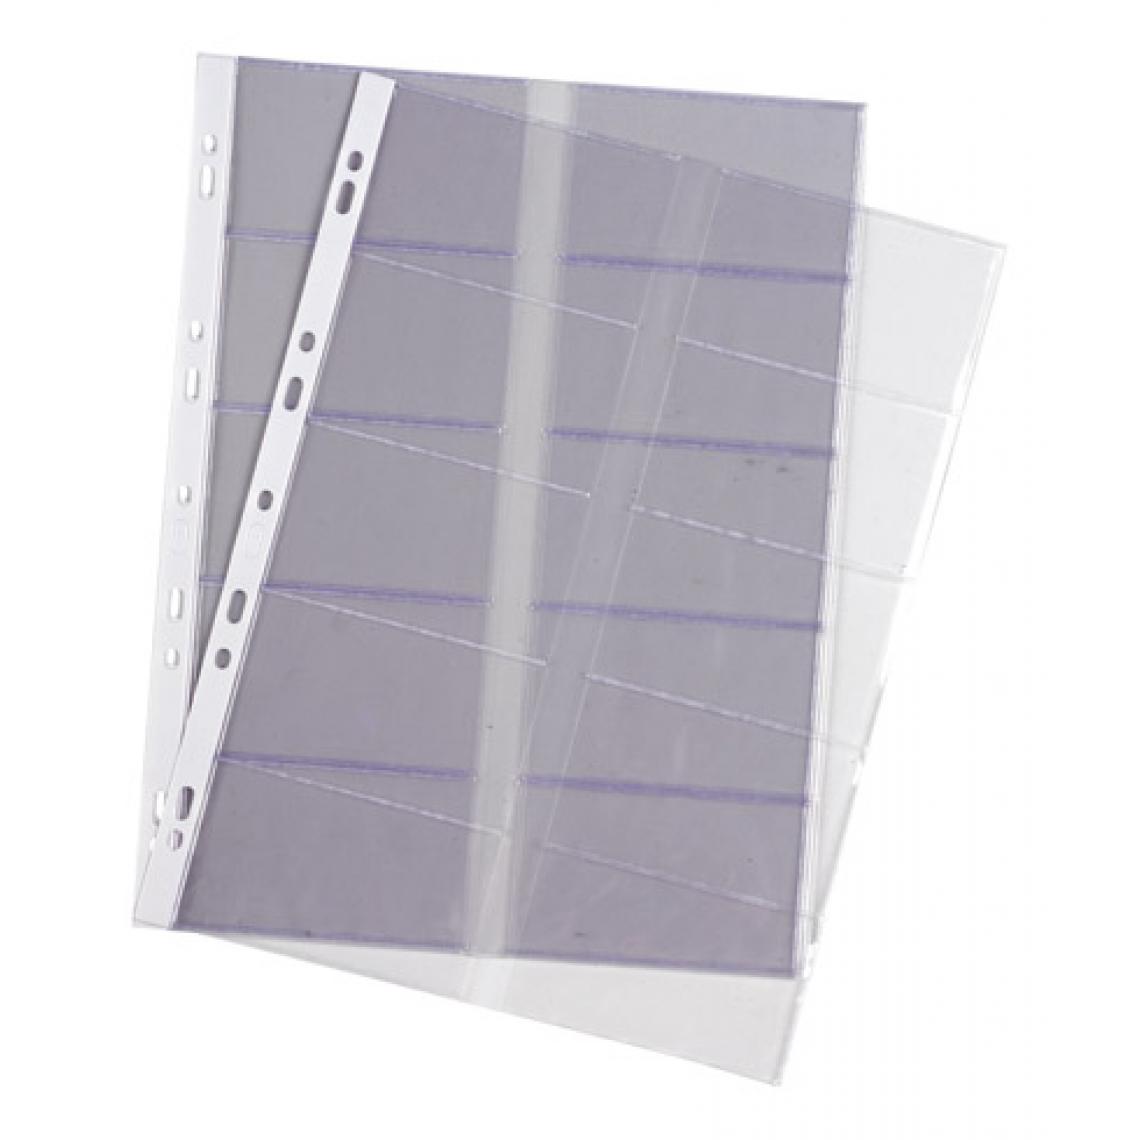 Oxford - Pochette transparente cartes de visite Oxford A4 PVC 10/100e incolore - Paquet de 10 - Accessoires Bureau